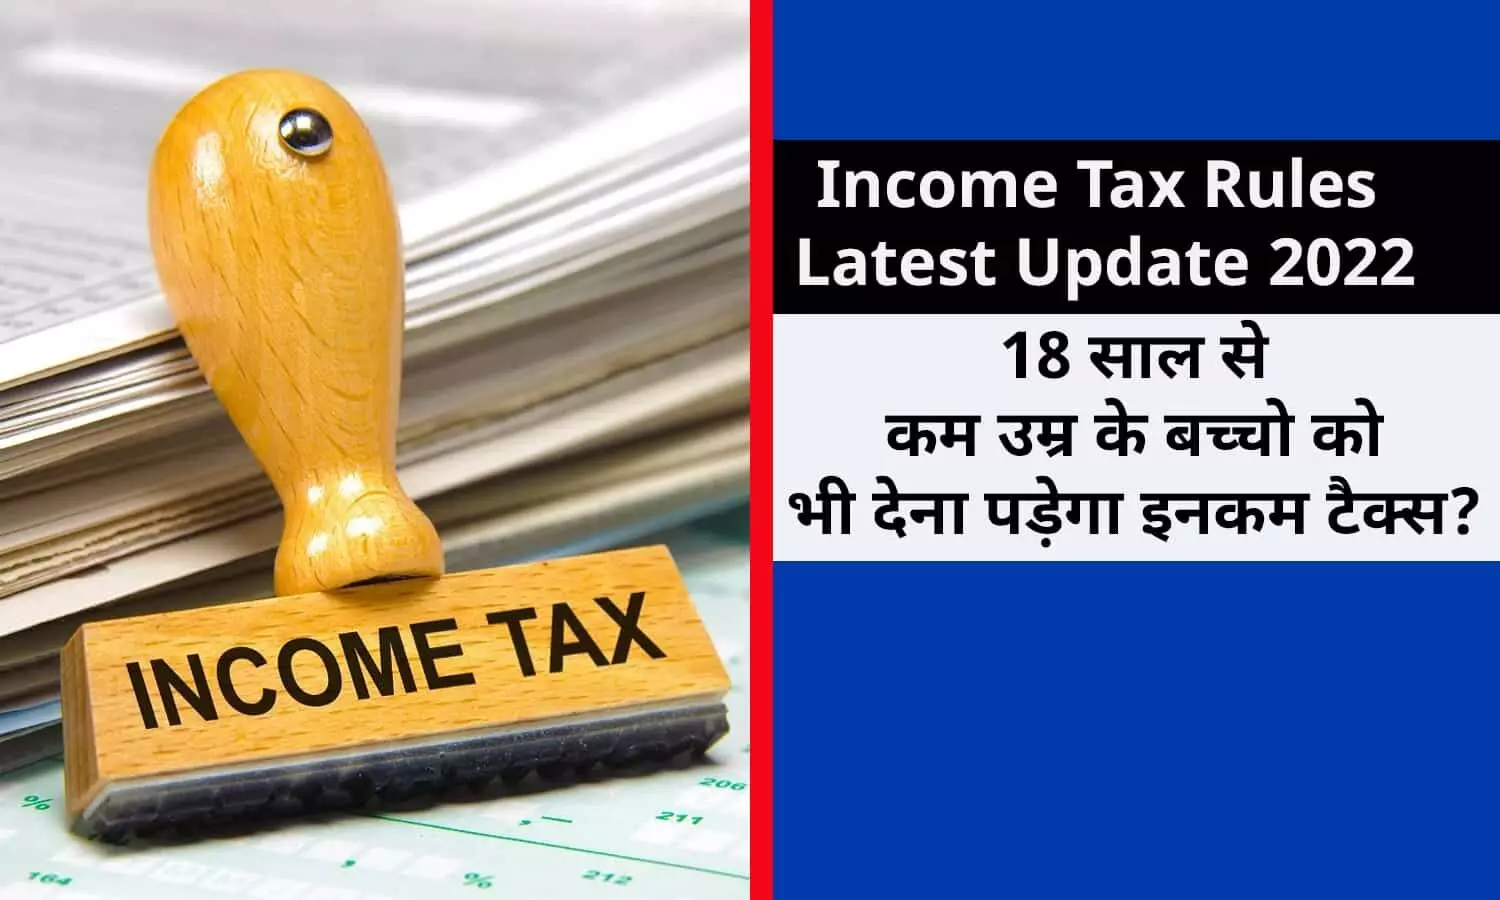 Income Tax New Rules Latest Update 2022: 18 साल से कम उम्र के बच्चो को भी देना पड़ेगा इनकम टैक्स? जानिए नया नियम